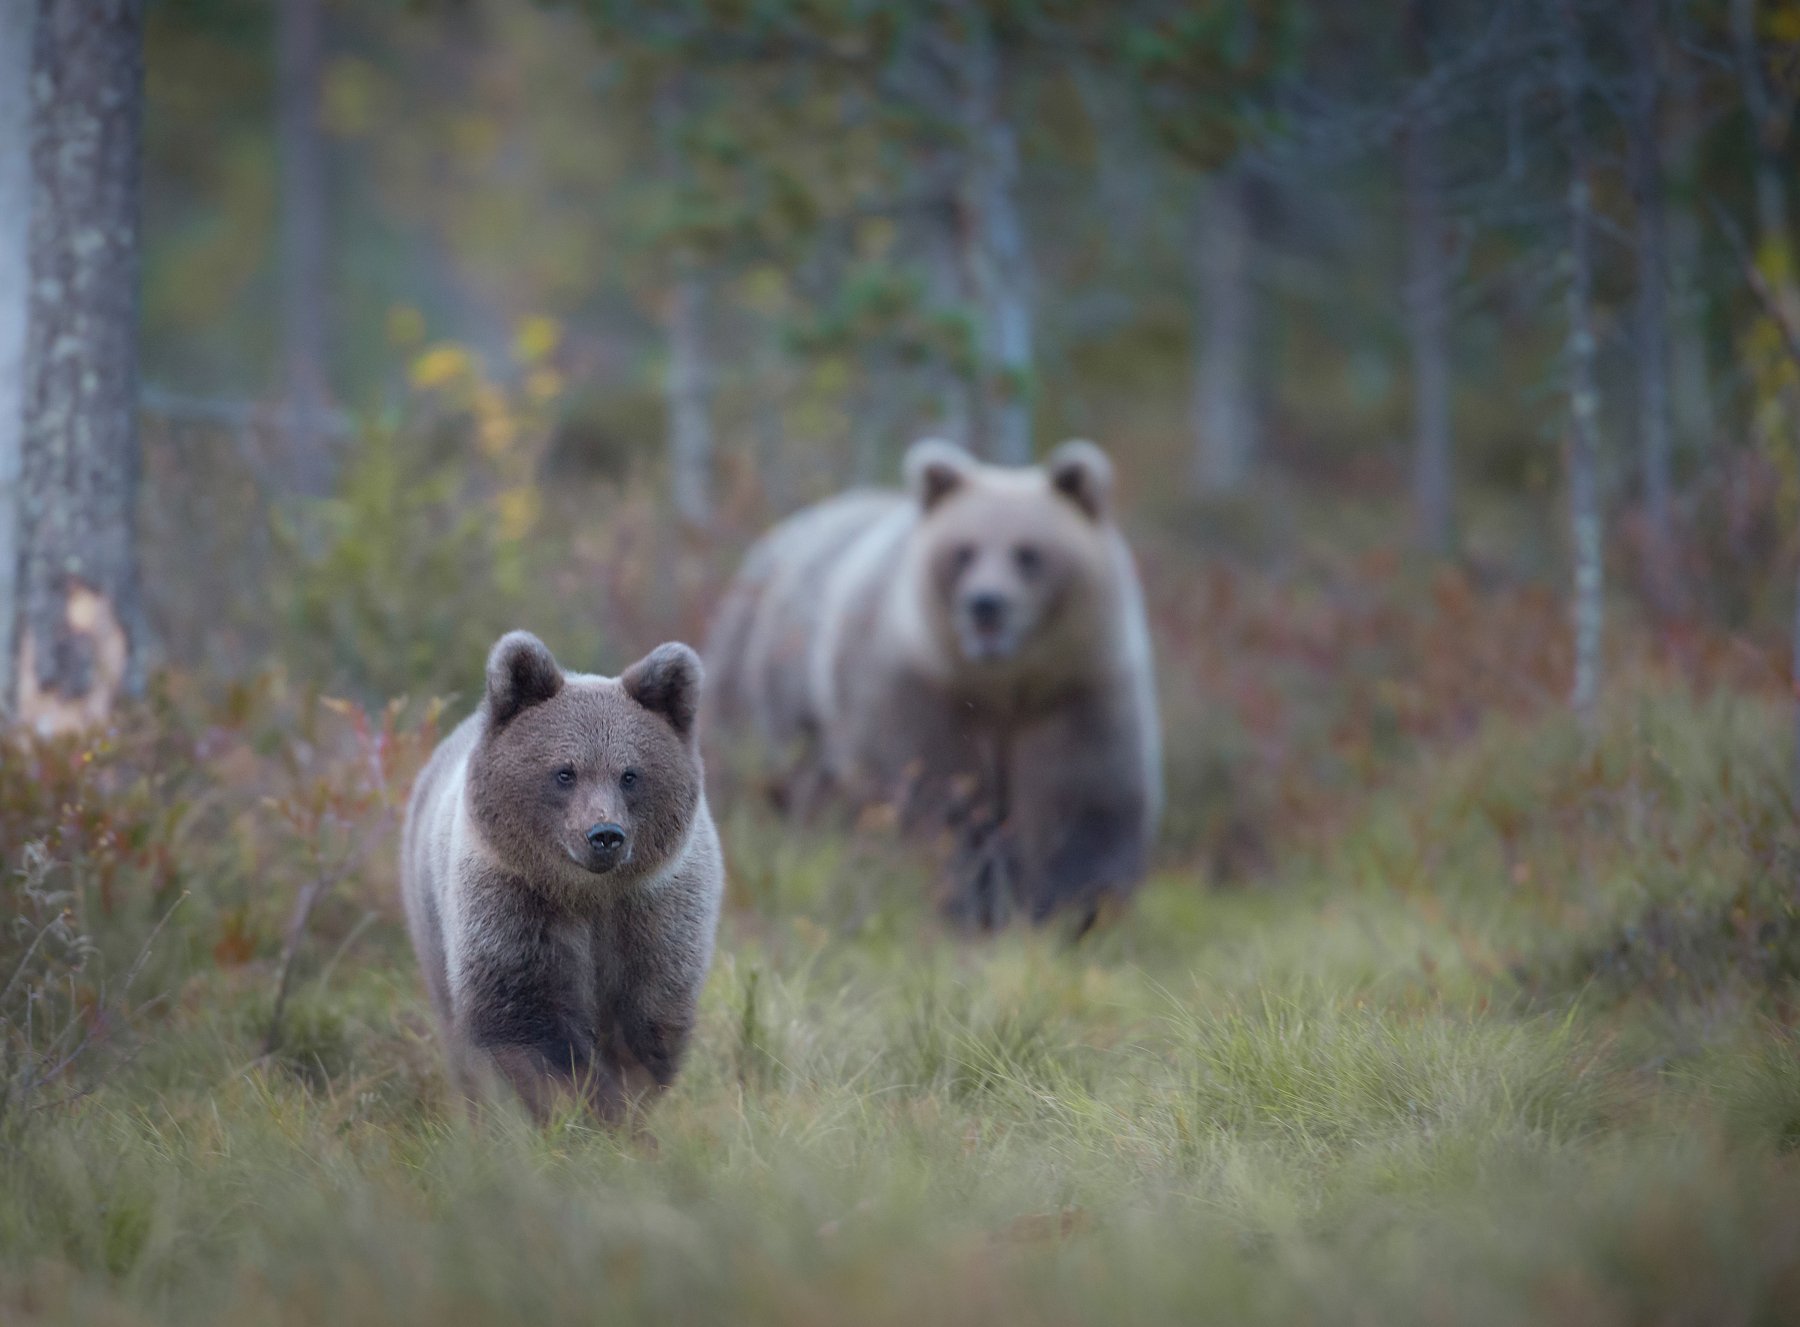 Bears, Finland, autumn, cub, , Jarkko Järvinen